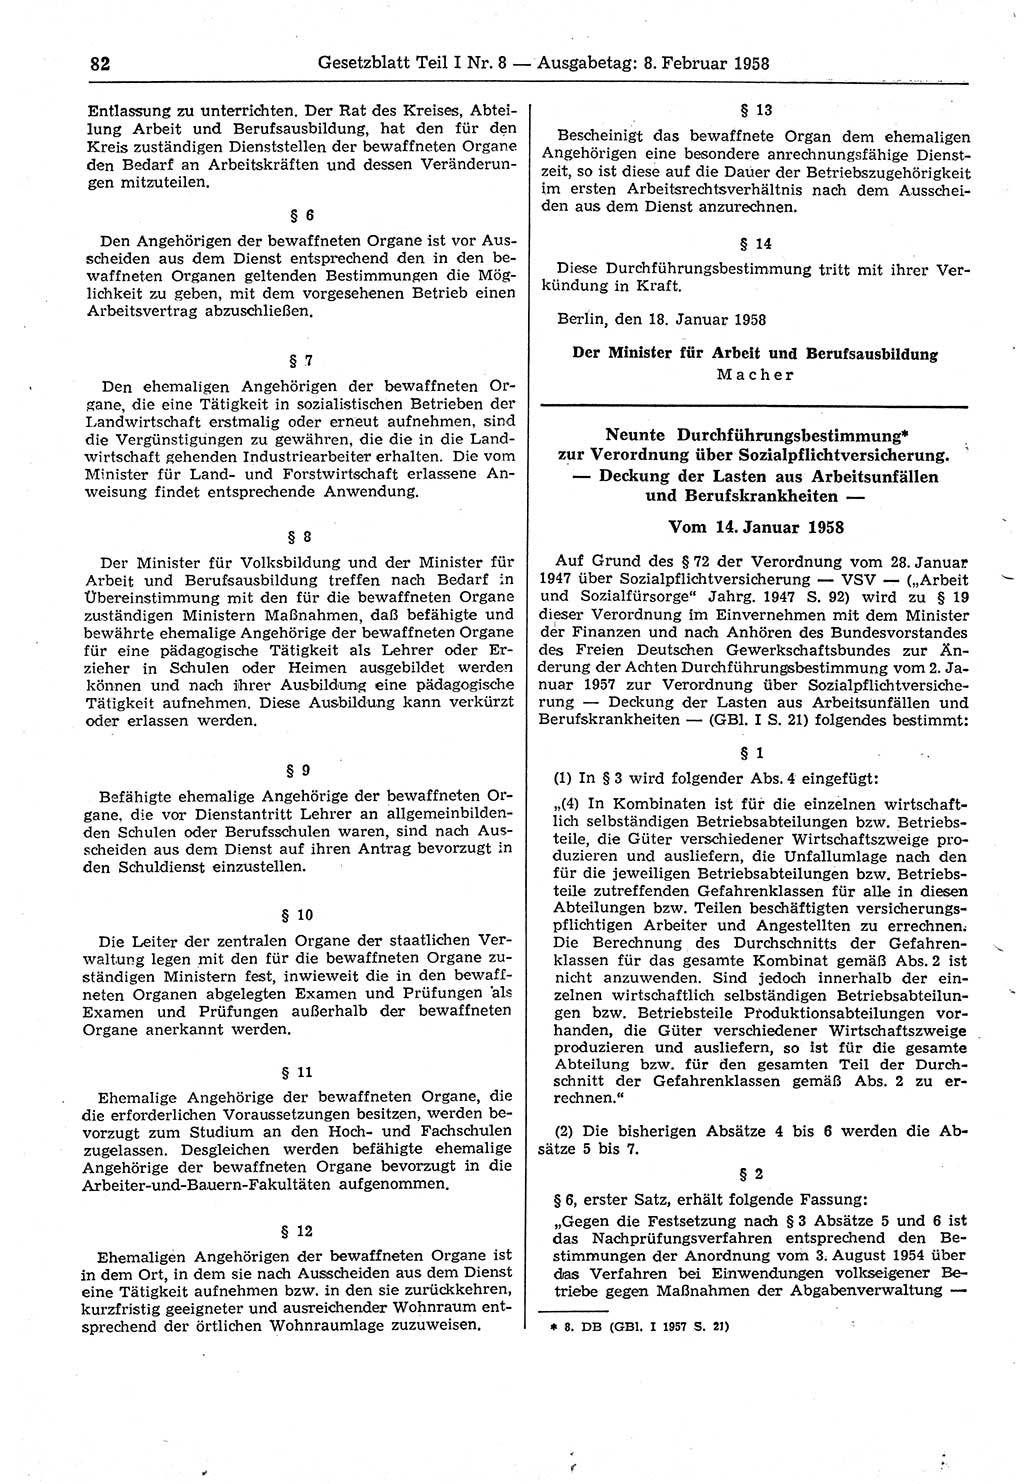 Gesetzblatt (GBl.) der Deutschen Demokratischen Republik (DDR) Teil Ⅰ 1958, Seite 82 (GBl. DDR Ⅰ 1958, S. 82)